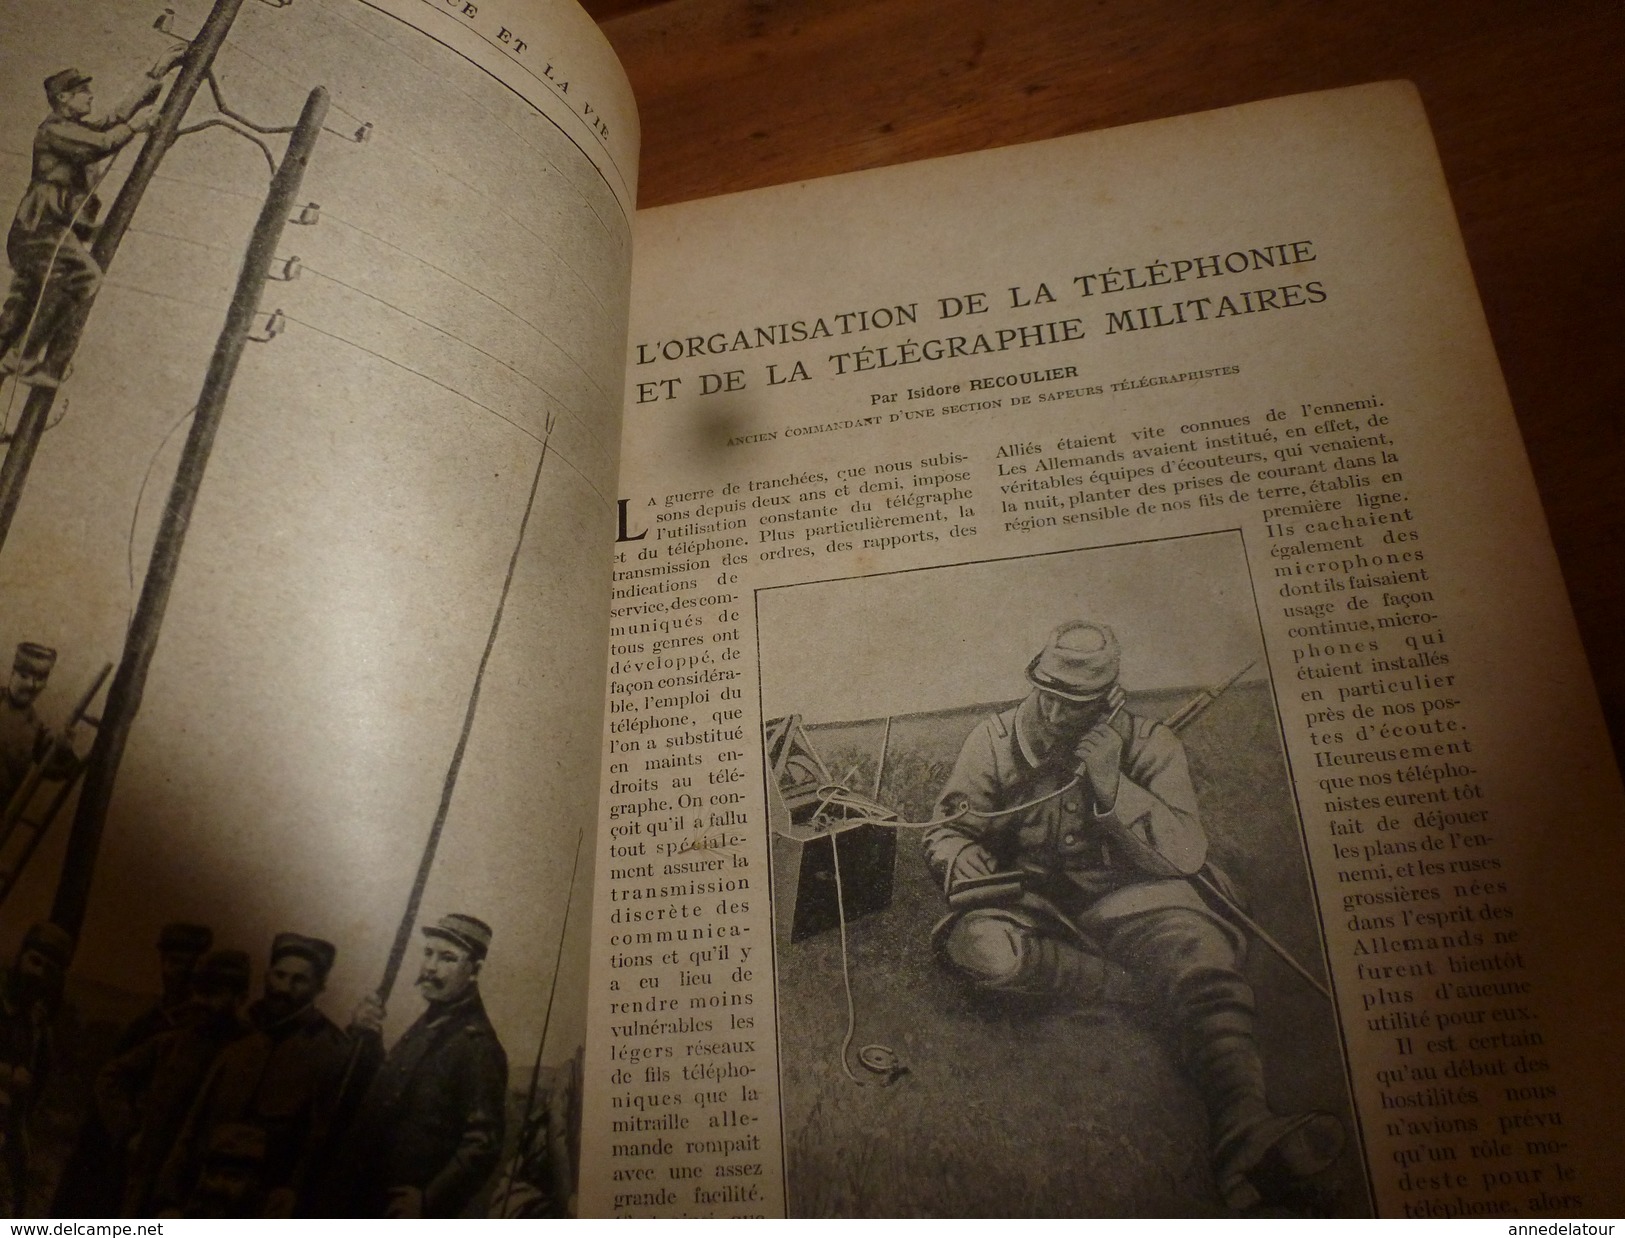 1917 LSELV :Fourgons-viviers Pour Transport Du Poisson(de Frédéric Chaumenton);Téléphonie Militaire(Isidor Recoulier) - Telefontechnik